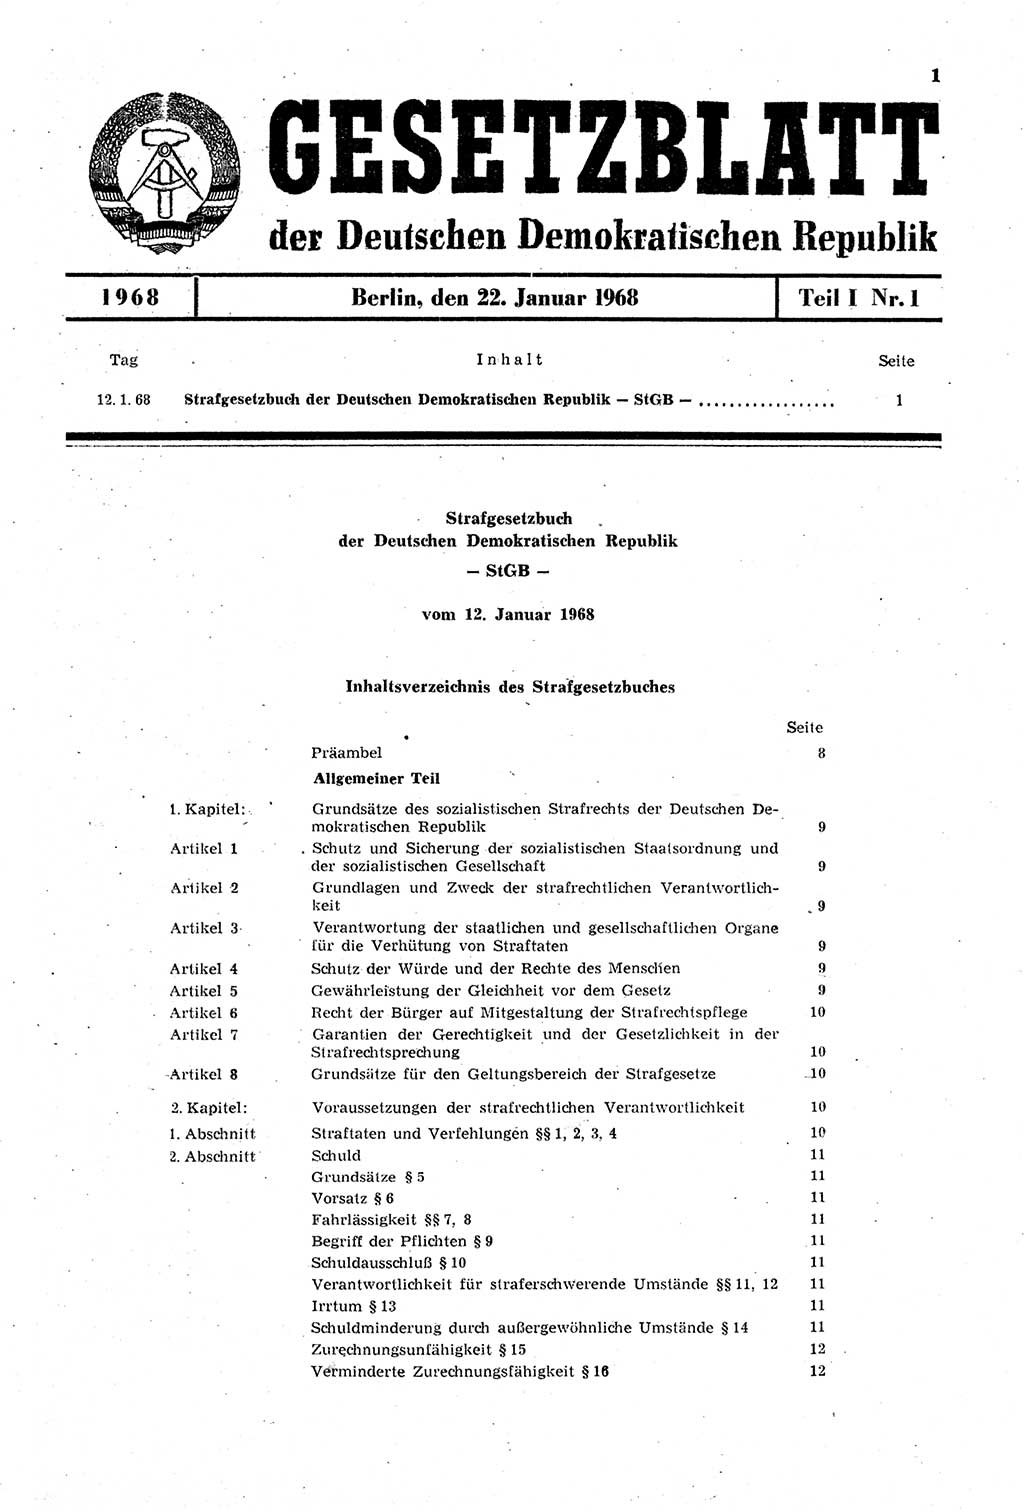 Gesetzblatt (GBl.) der Deutschen Demokratischen Republik (DDR) Teil Ⅰ 1968, Seite 1 (GBl. DDR Ⅰ 1968, S. 1)